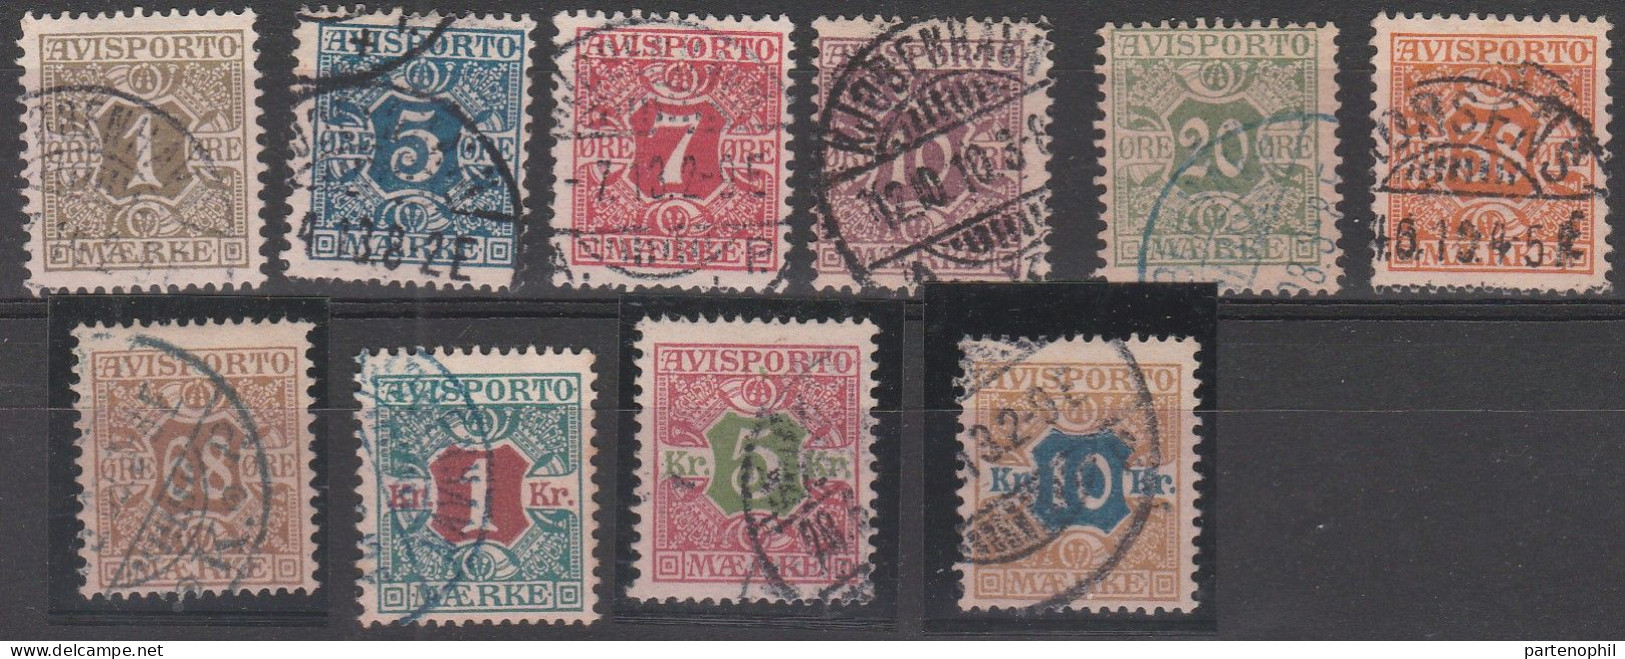 458 - Denmark Danimarca 1907 - Giornali - Cifra Al Centro N. 1/10. Cat. € 180,00. SPL - Oblitérés